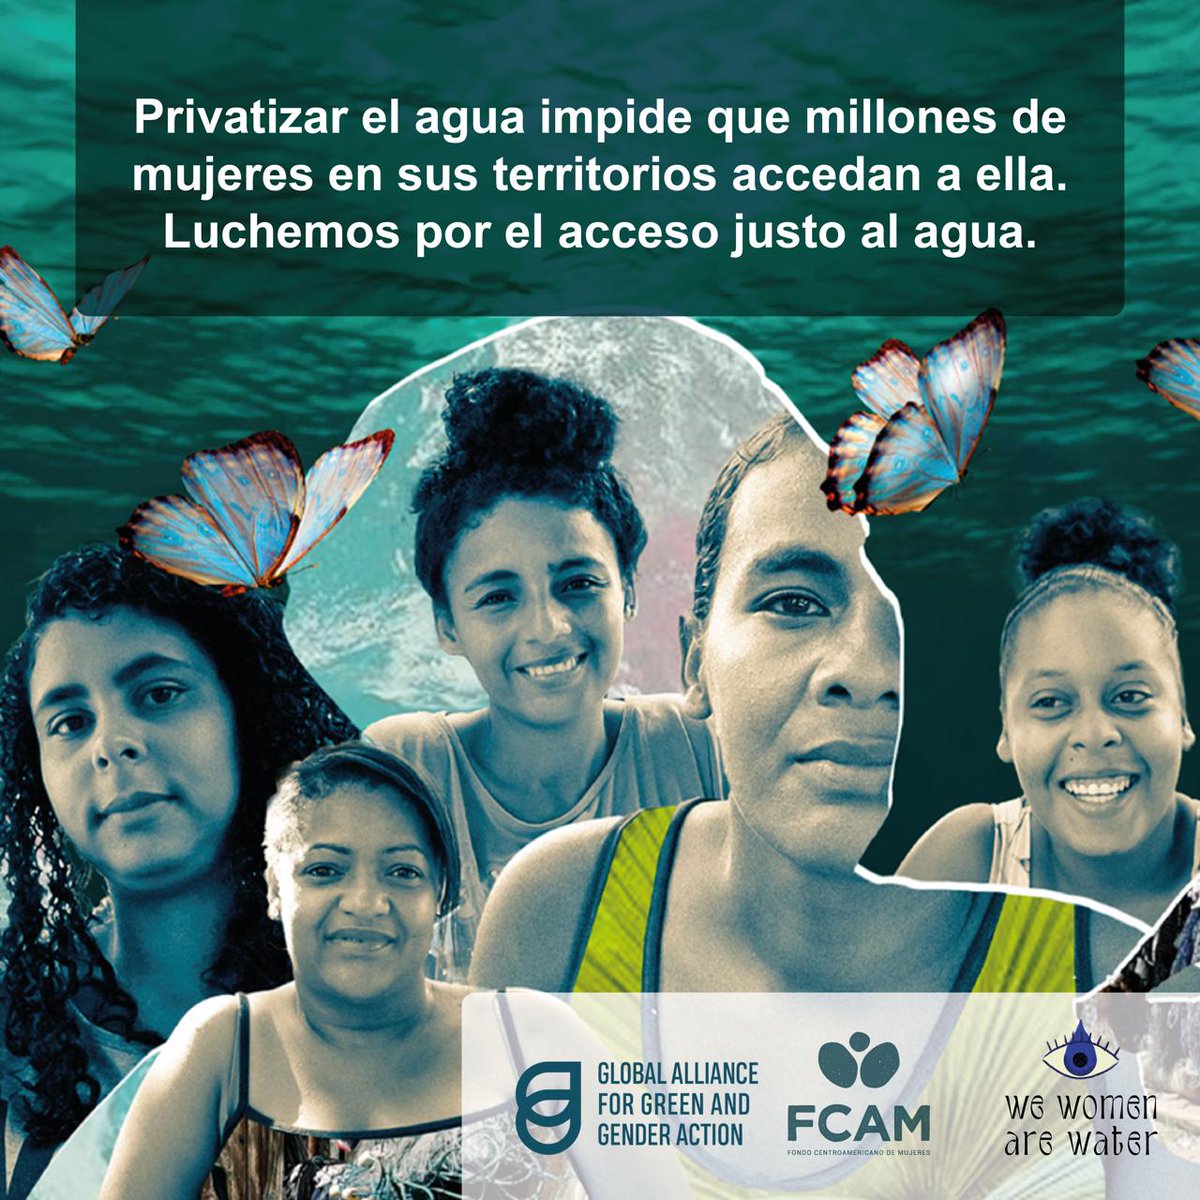 22 de marzo, Día Mundial del Agua 💧🍃

¡El acceso al agua es un derecho humano! ✊🏽

#LasMujeresSomosAgua #WeWomenAreWater